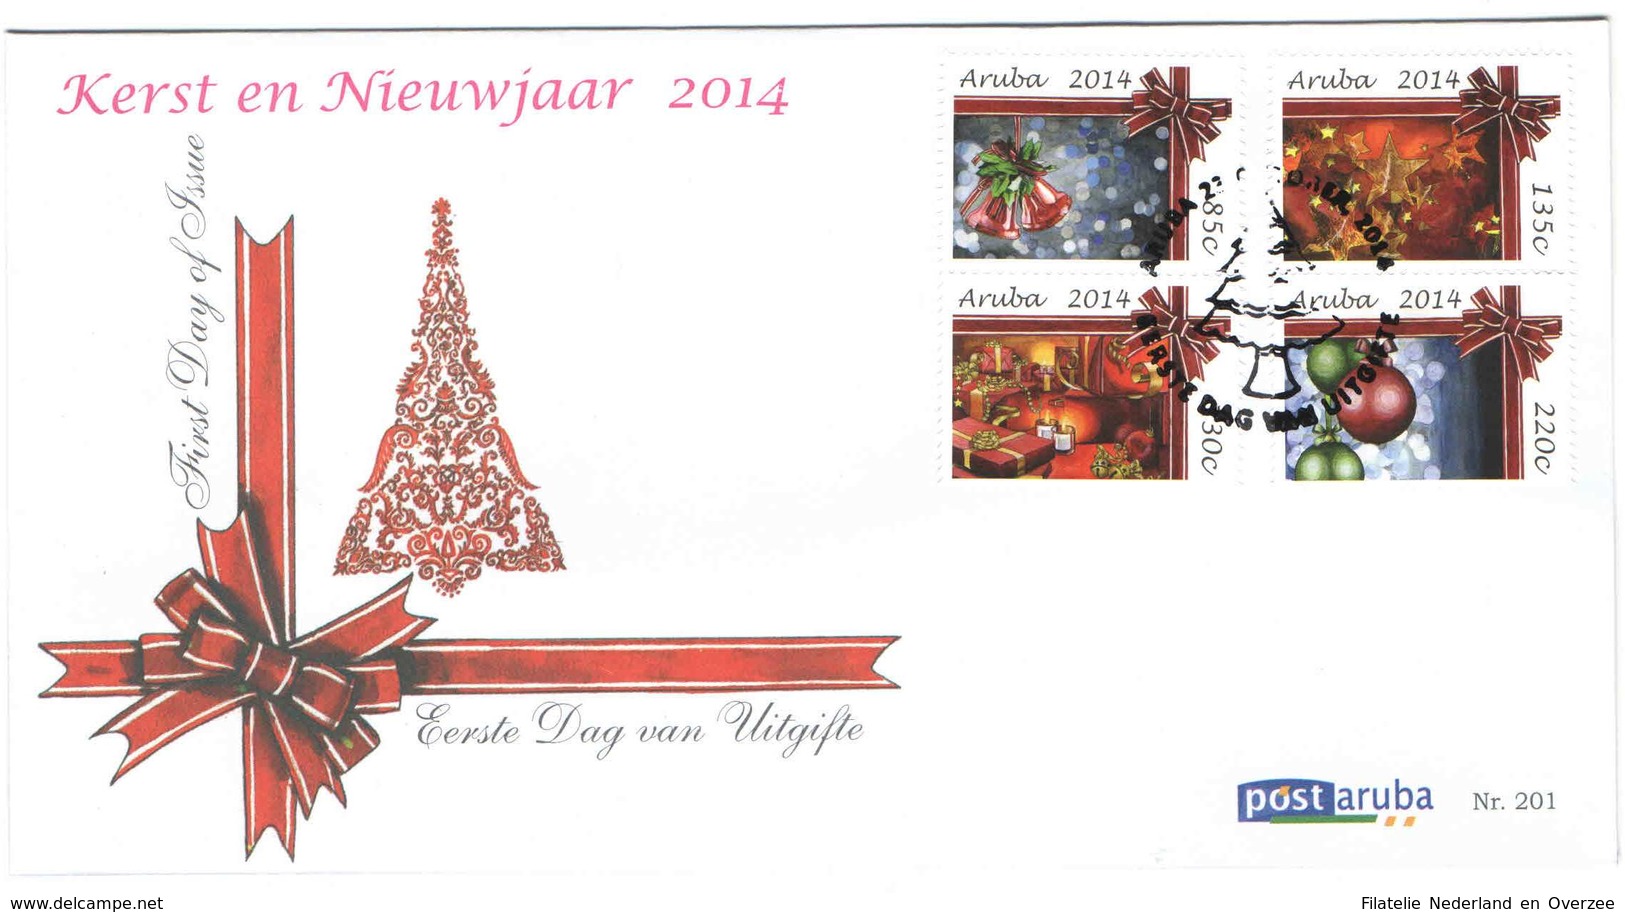 Aruba FDC E201 Zonder Adres. Kerst En Nieuwjaar, Christmas And New Year, Noel, Date Of Issue: 23-10-2014 - Curaçao, Nederlandse Antillen, Aruba